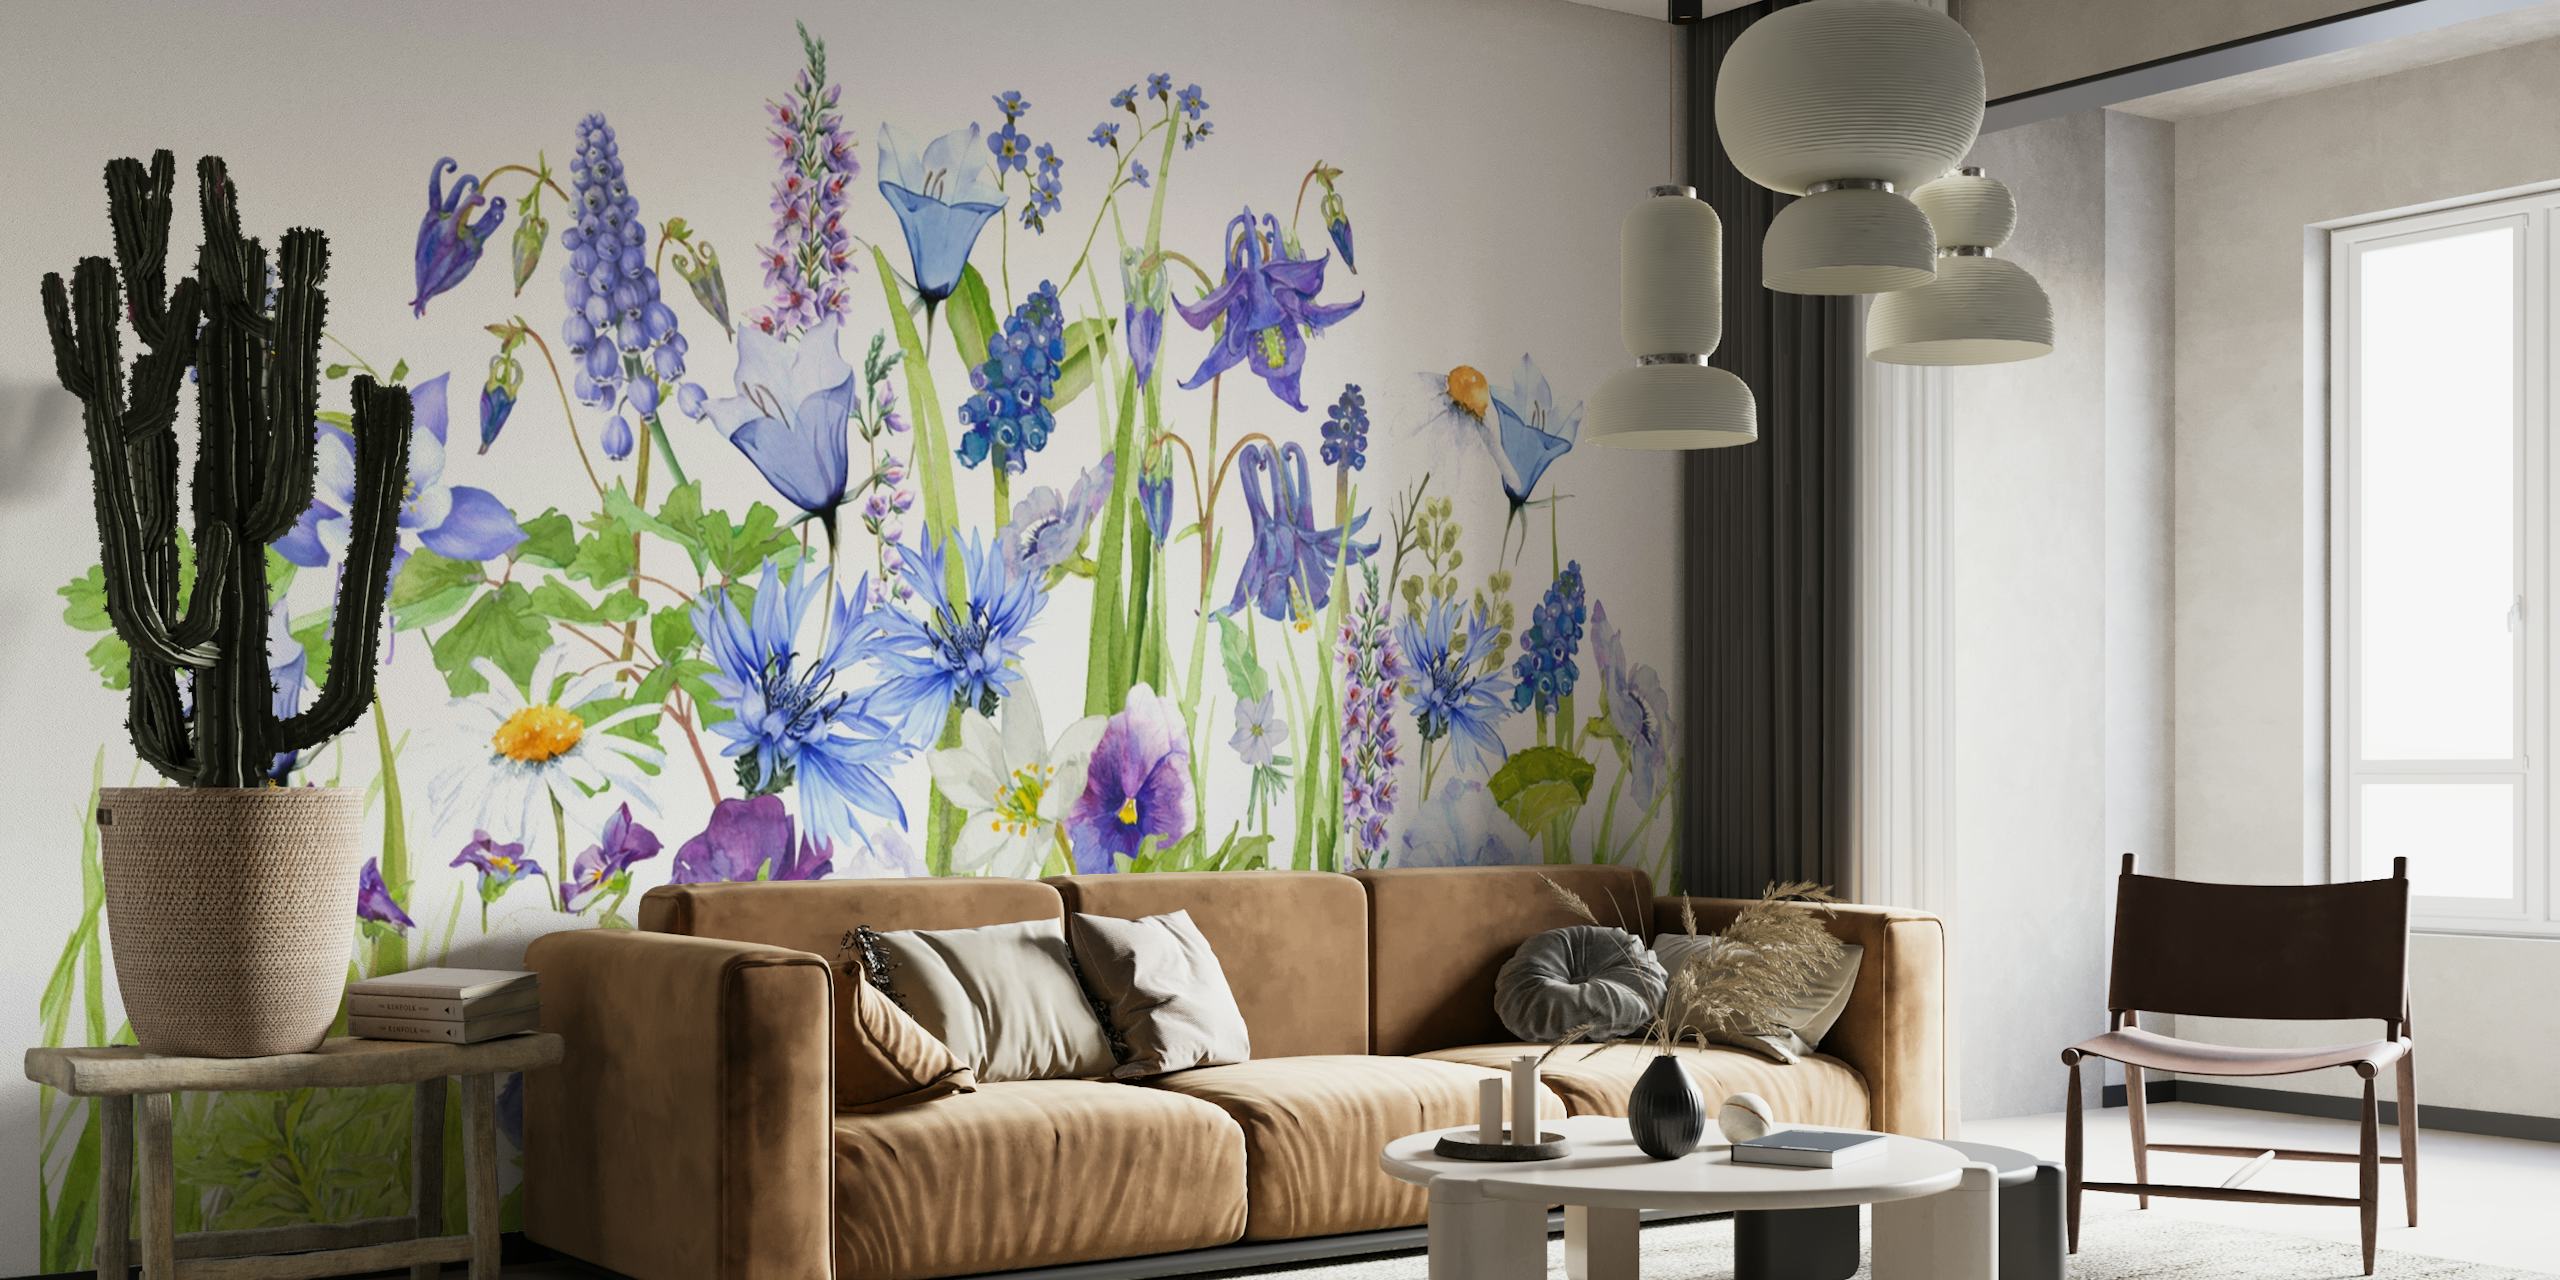 Un mural que representa una variedad de flores silvestres en tonos de azul y verde, creando una escena envolvente de pradera de verano.